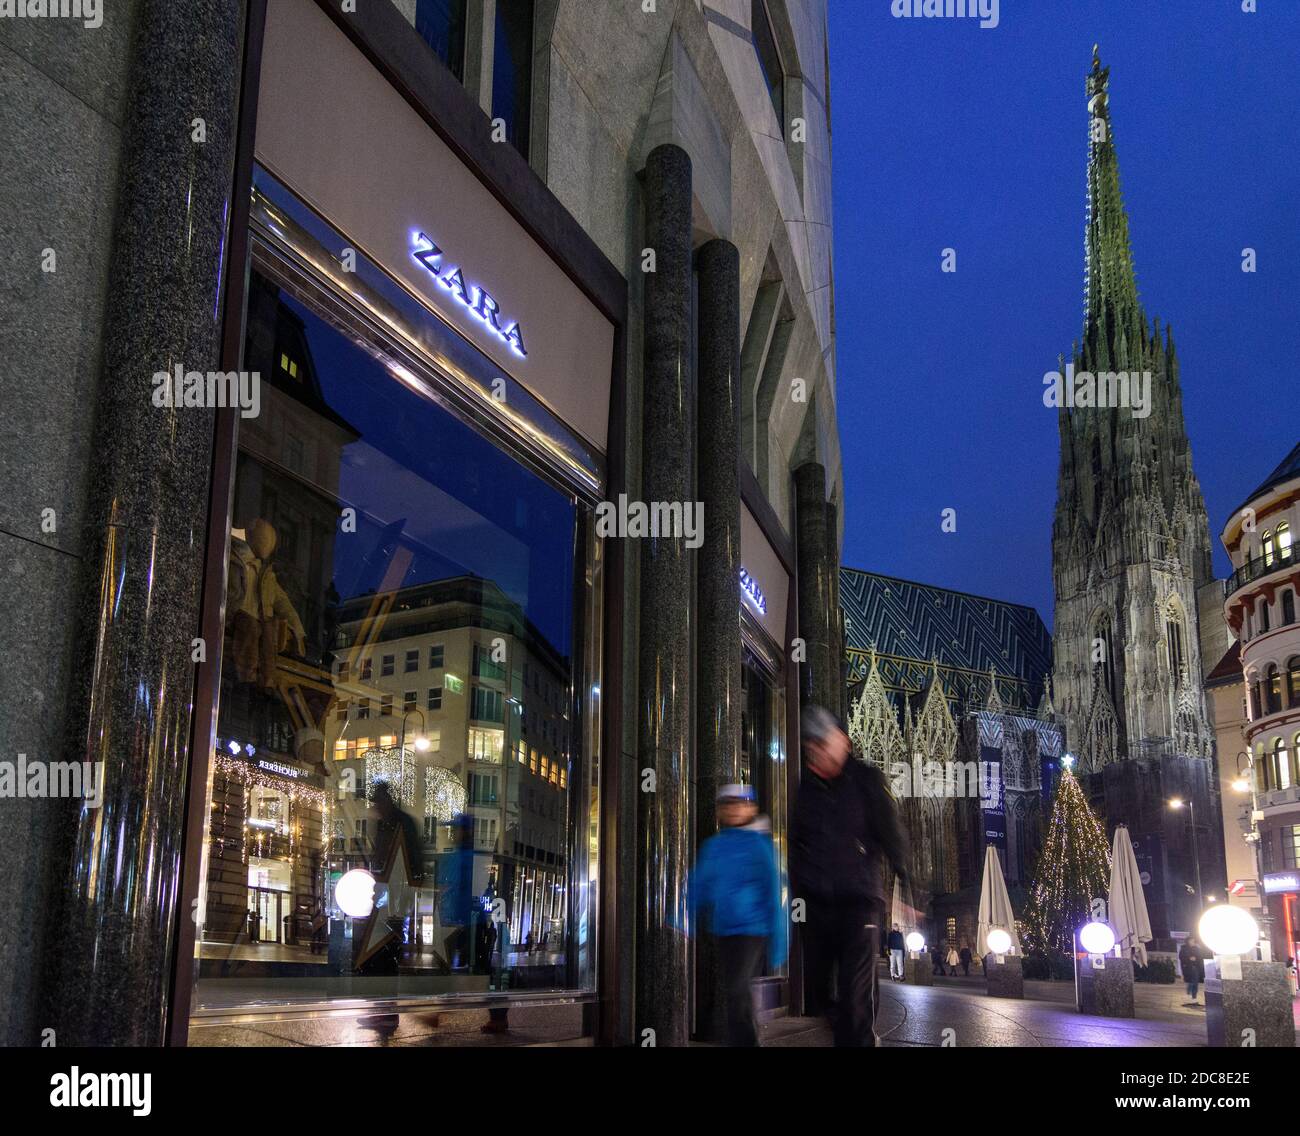 Wien, Vienne: Fermé à l'enfermement en raison de la pandémie de COVID 19 dans la période précédant Noël, vitrine noire de magasin, Stephansdom (St. Cathédrale de Stephen Banque D'Images